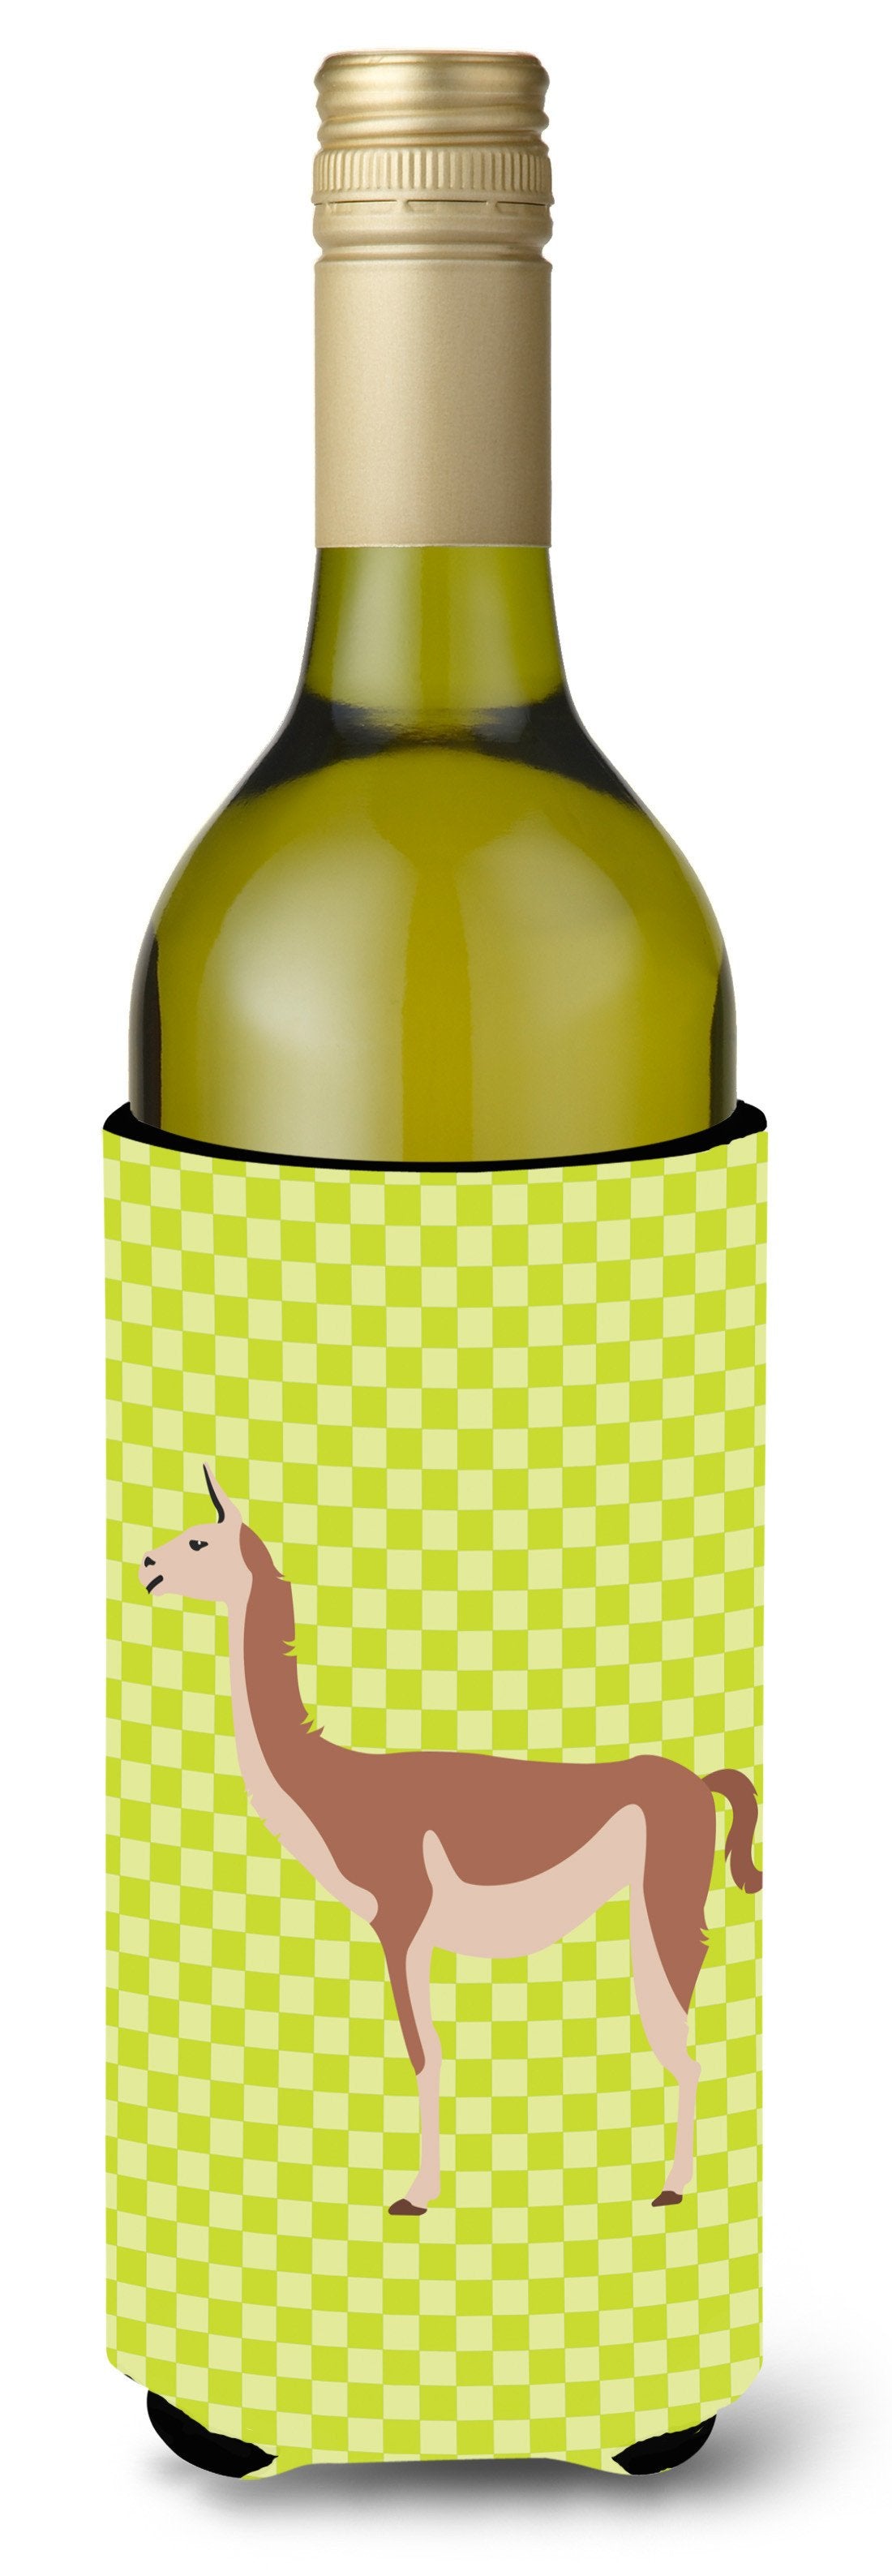 Guanaco Green Wine Bottle Beverge Insulator Hugger BB7747LITERK by Caroline's Treasures